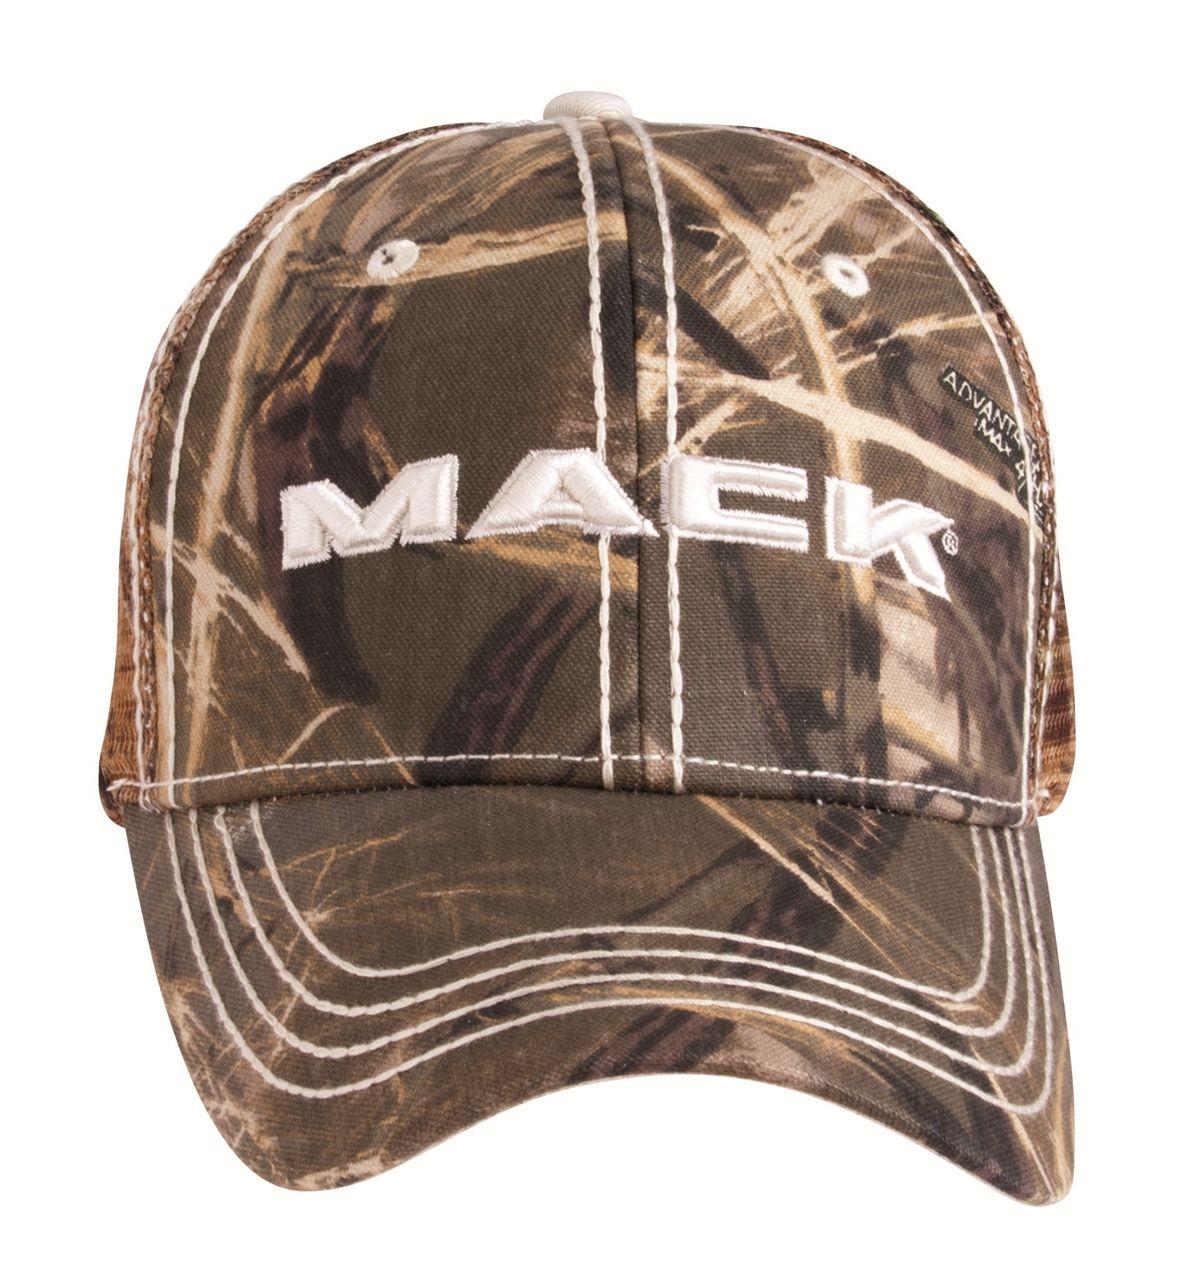 Camo Mack Logo - MACK FRONT GRILL LOGO CAMO MESH CAP | Mack Shop